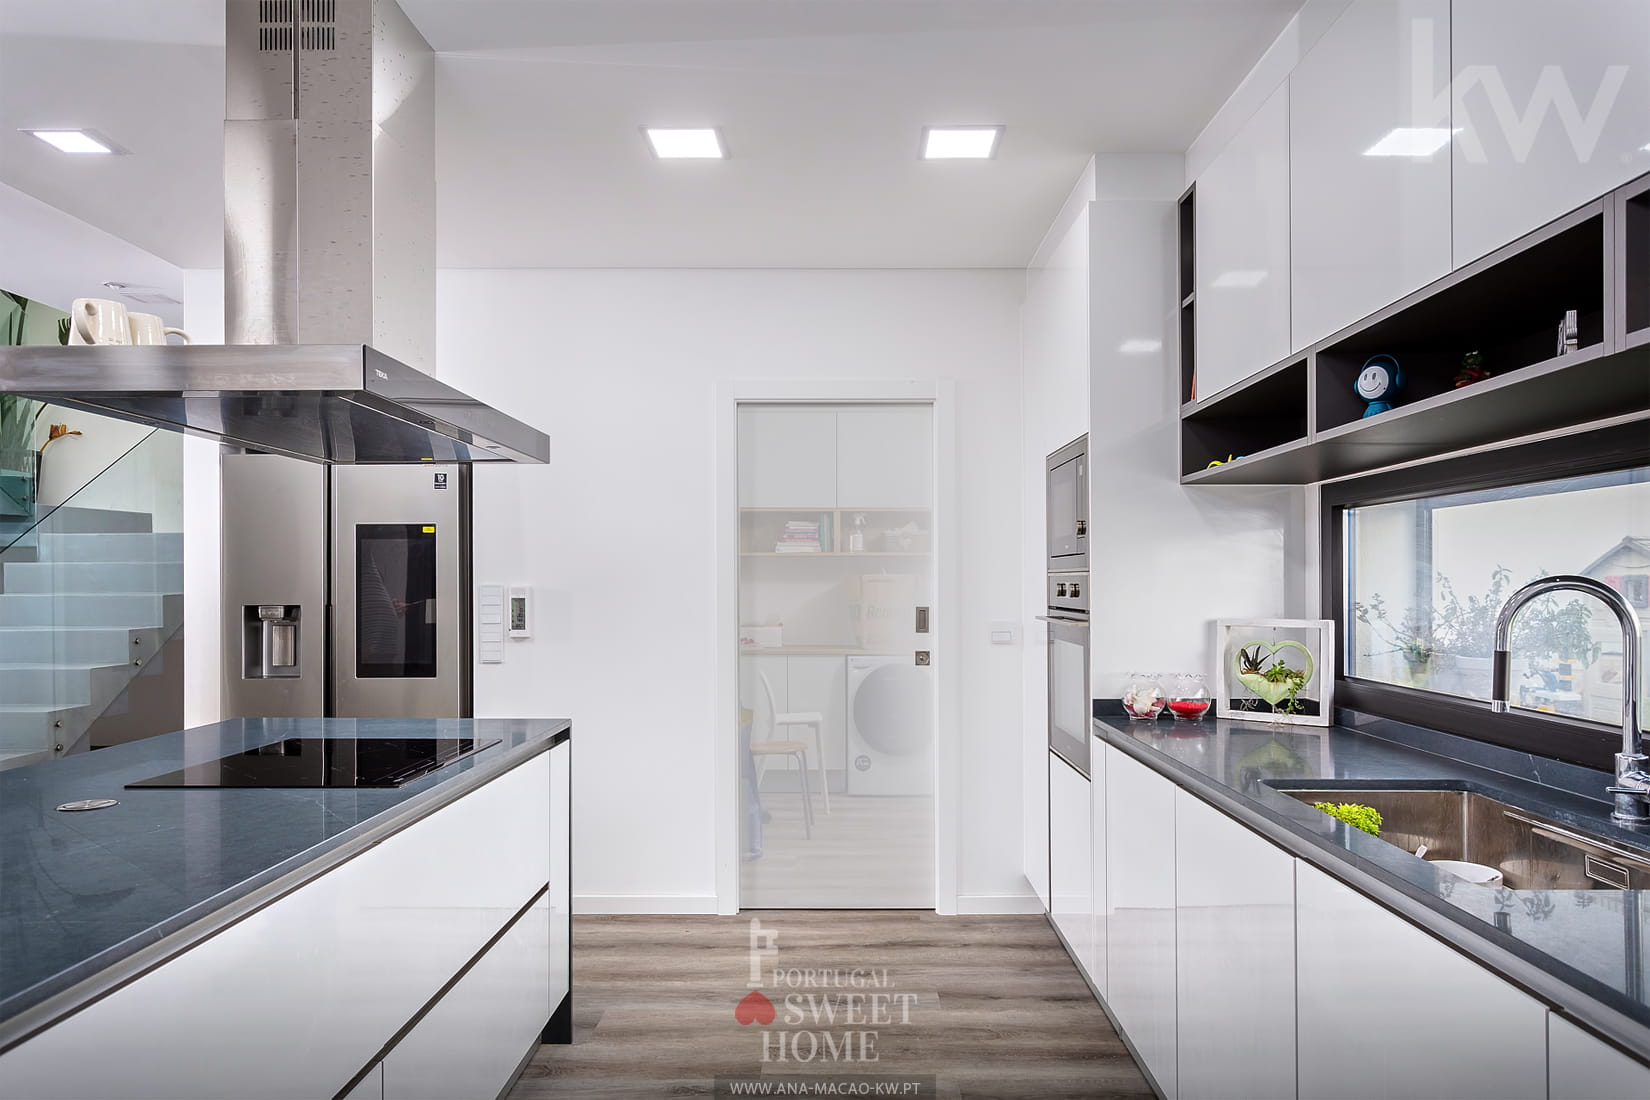 Cozinha (14,8 m2) com ligação à zona de lavandaria